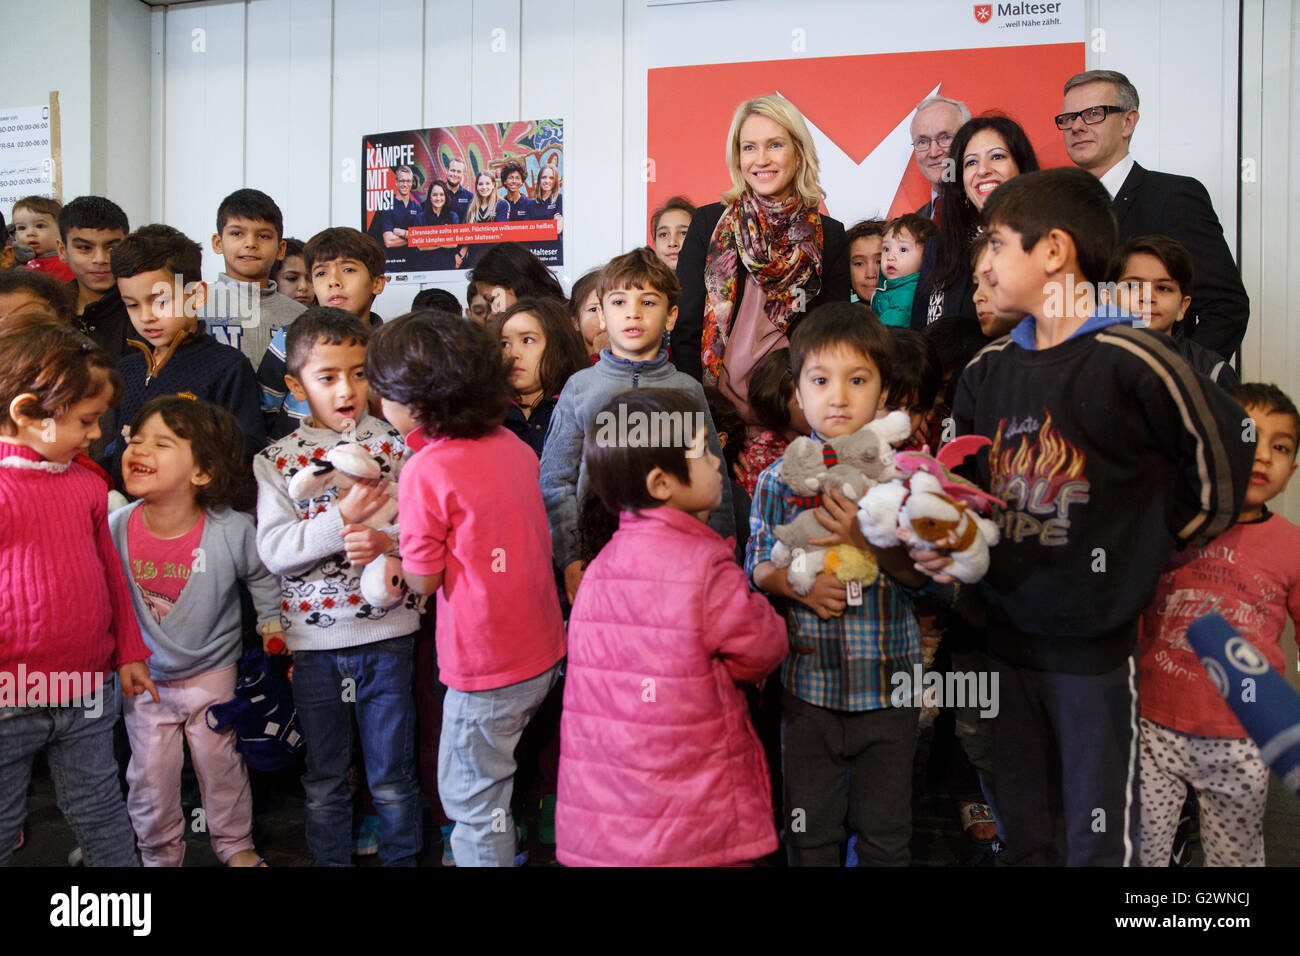 08.12.2015, Berlin, Berlin, Germania - Ministro della famiglia Manuela Schwesig (SPD) visitata presso il centro congressi di un ricovero per i rifugiati. In gestito da Malteser proprietà, circa 1.000 rifugiati registrati sono alloggiati, la maggior parte delle loro famiglie. Qui nella distribuzione di giocattoli morbidi per i 130 bambini presso l'albergo. 0DB151208D026CAROEX.JPG - non per la vendita in G E R M A N Y, A U S T R I A, S W I T Z e R L A N D [modello di rilascio: NO, la proprietà di rilascio: NO, (c) caro agenzia fotografica / Bleicker, http://www.caro-images.com, info@carofoto.pl - Qualsiasi uso di questa immagine è soggetto a royalty!] Foto Stock